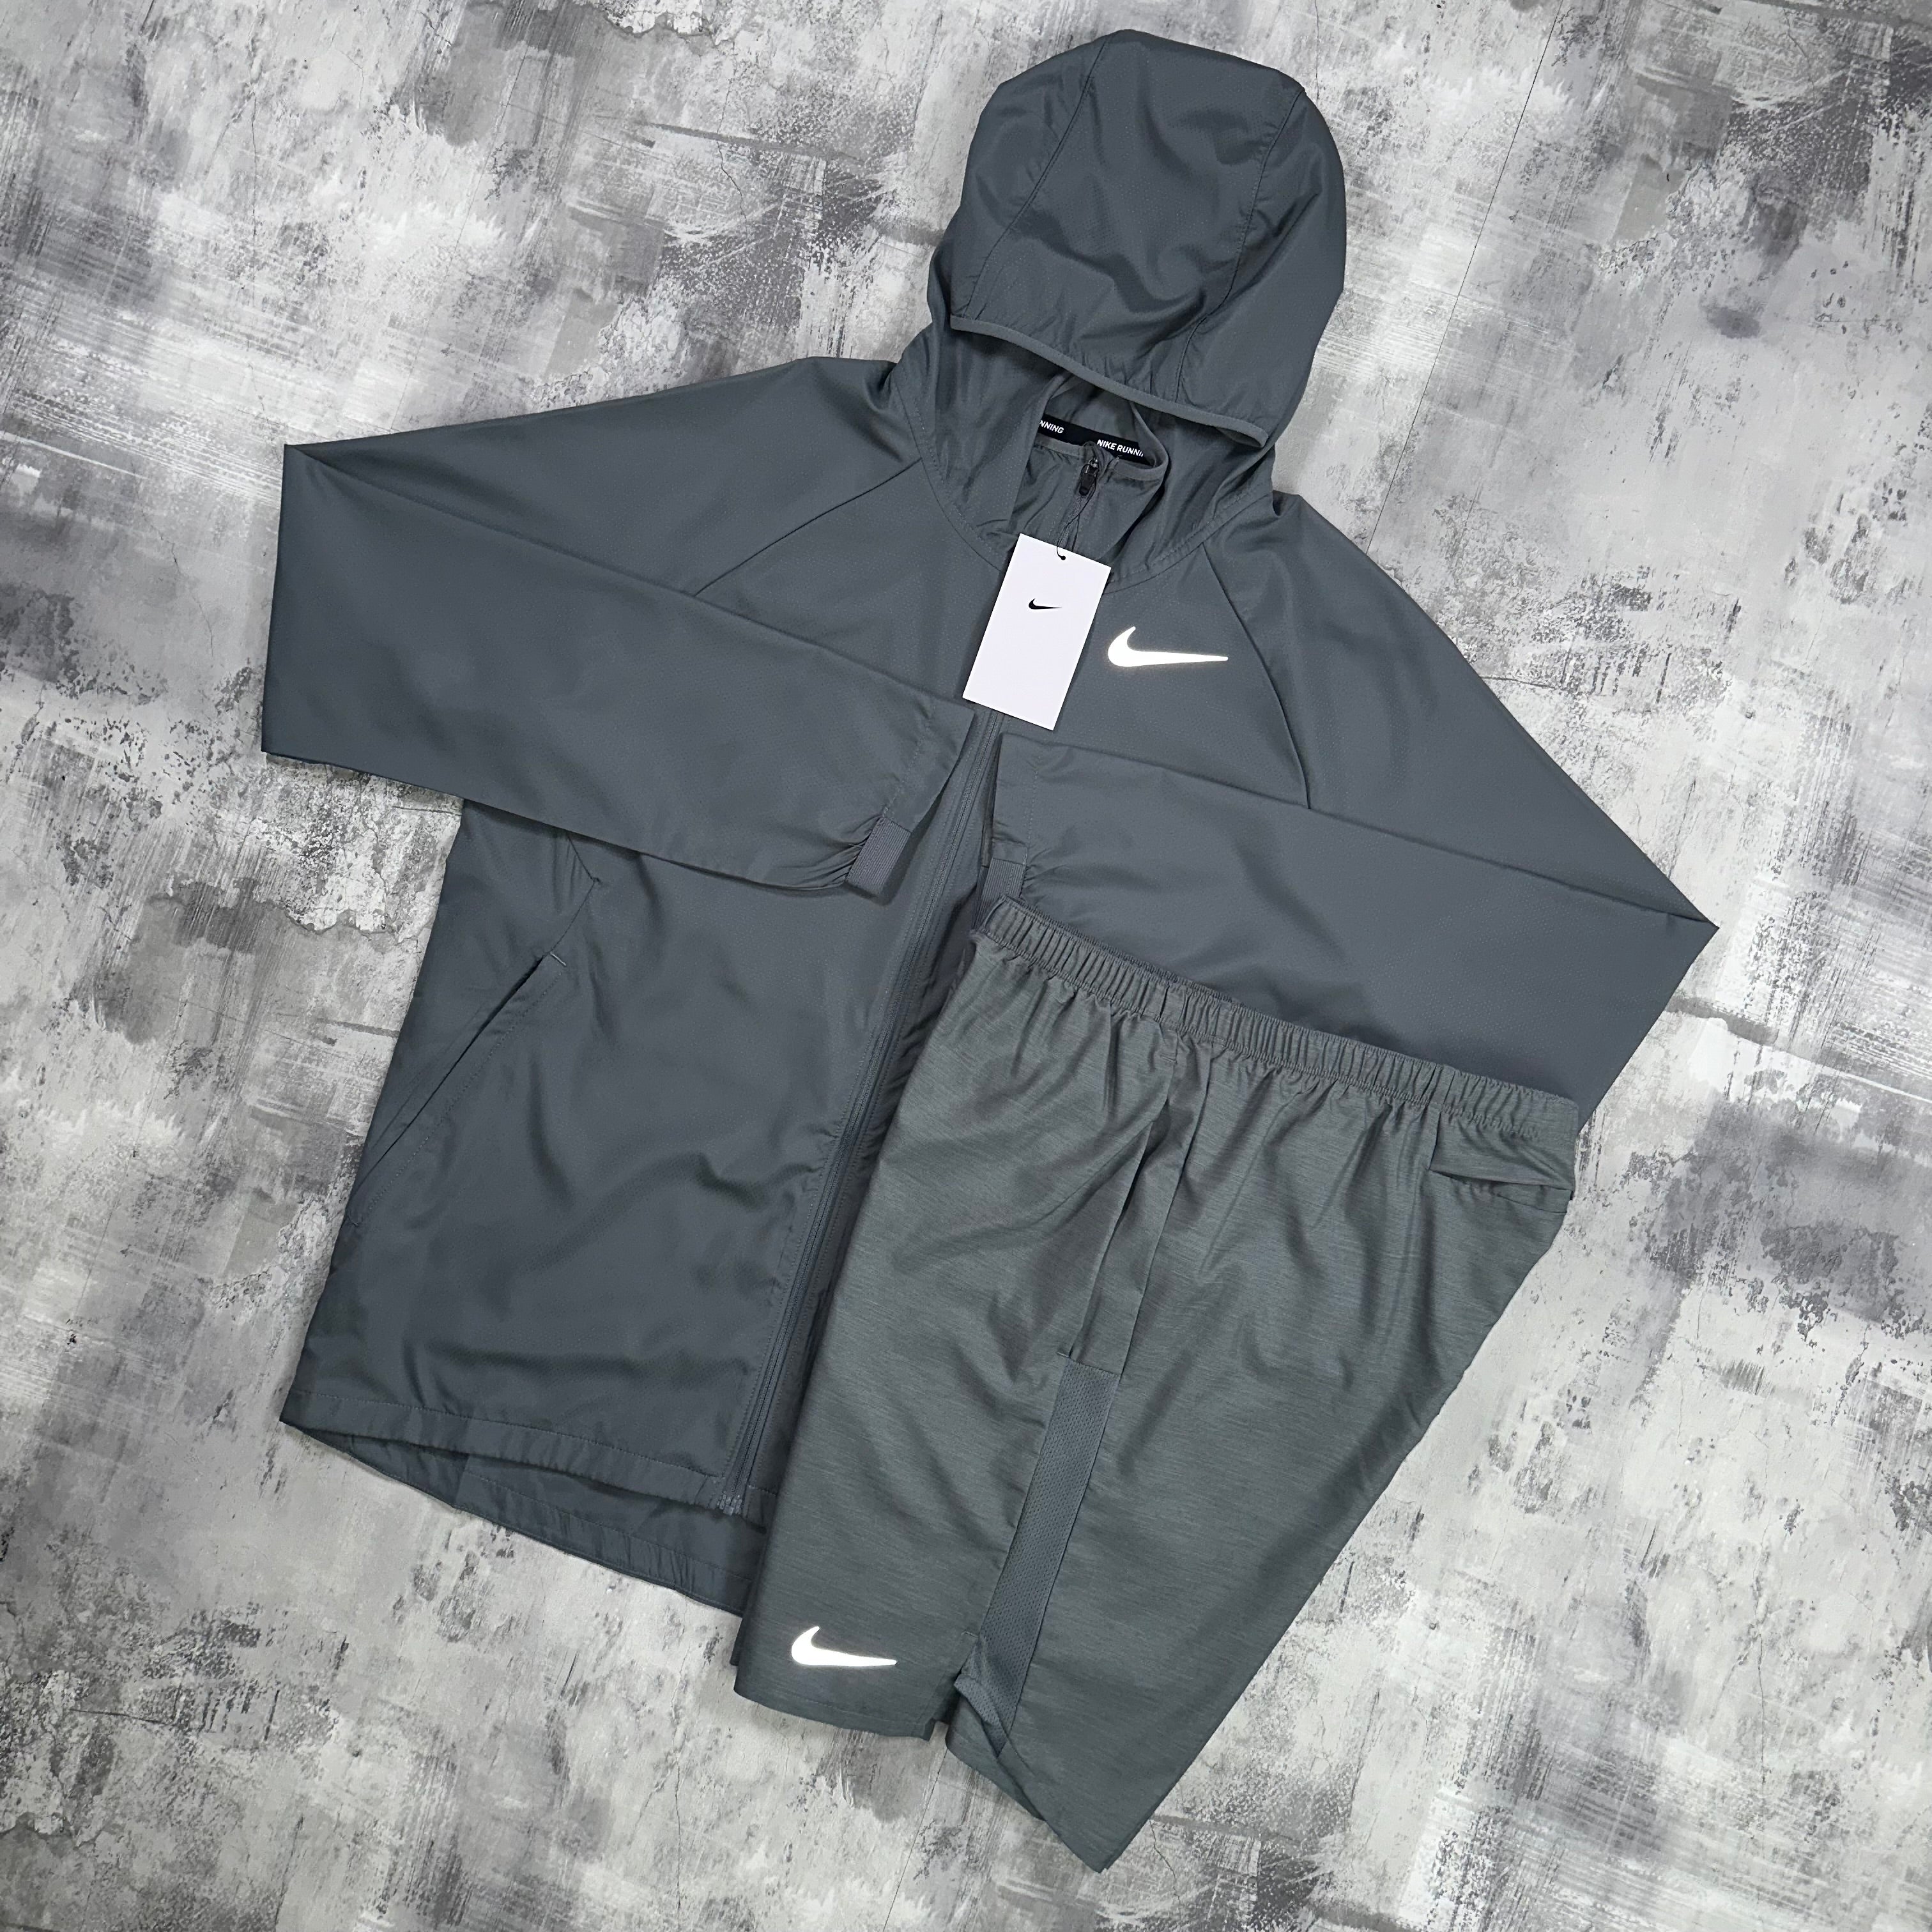 Nike Windrunner Set Smoke Grey - jacket & shorts